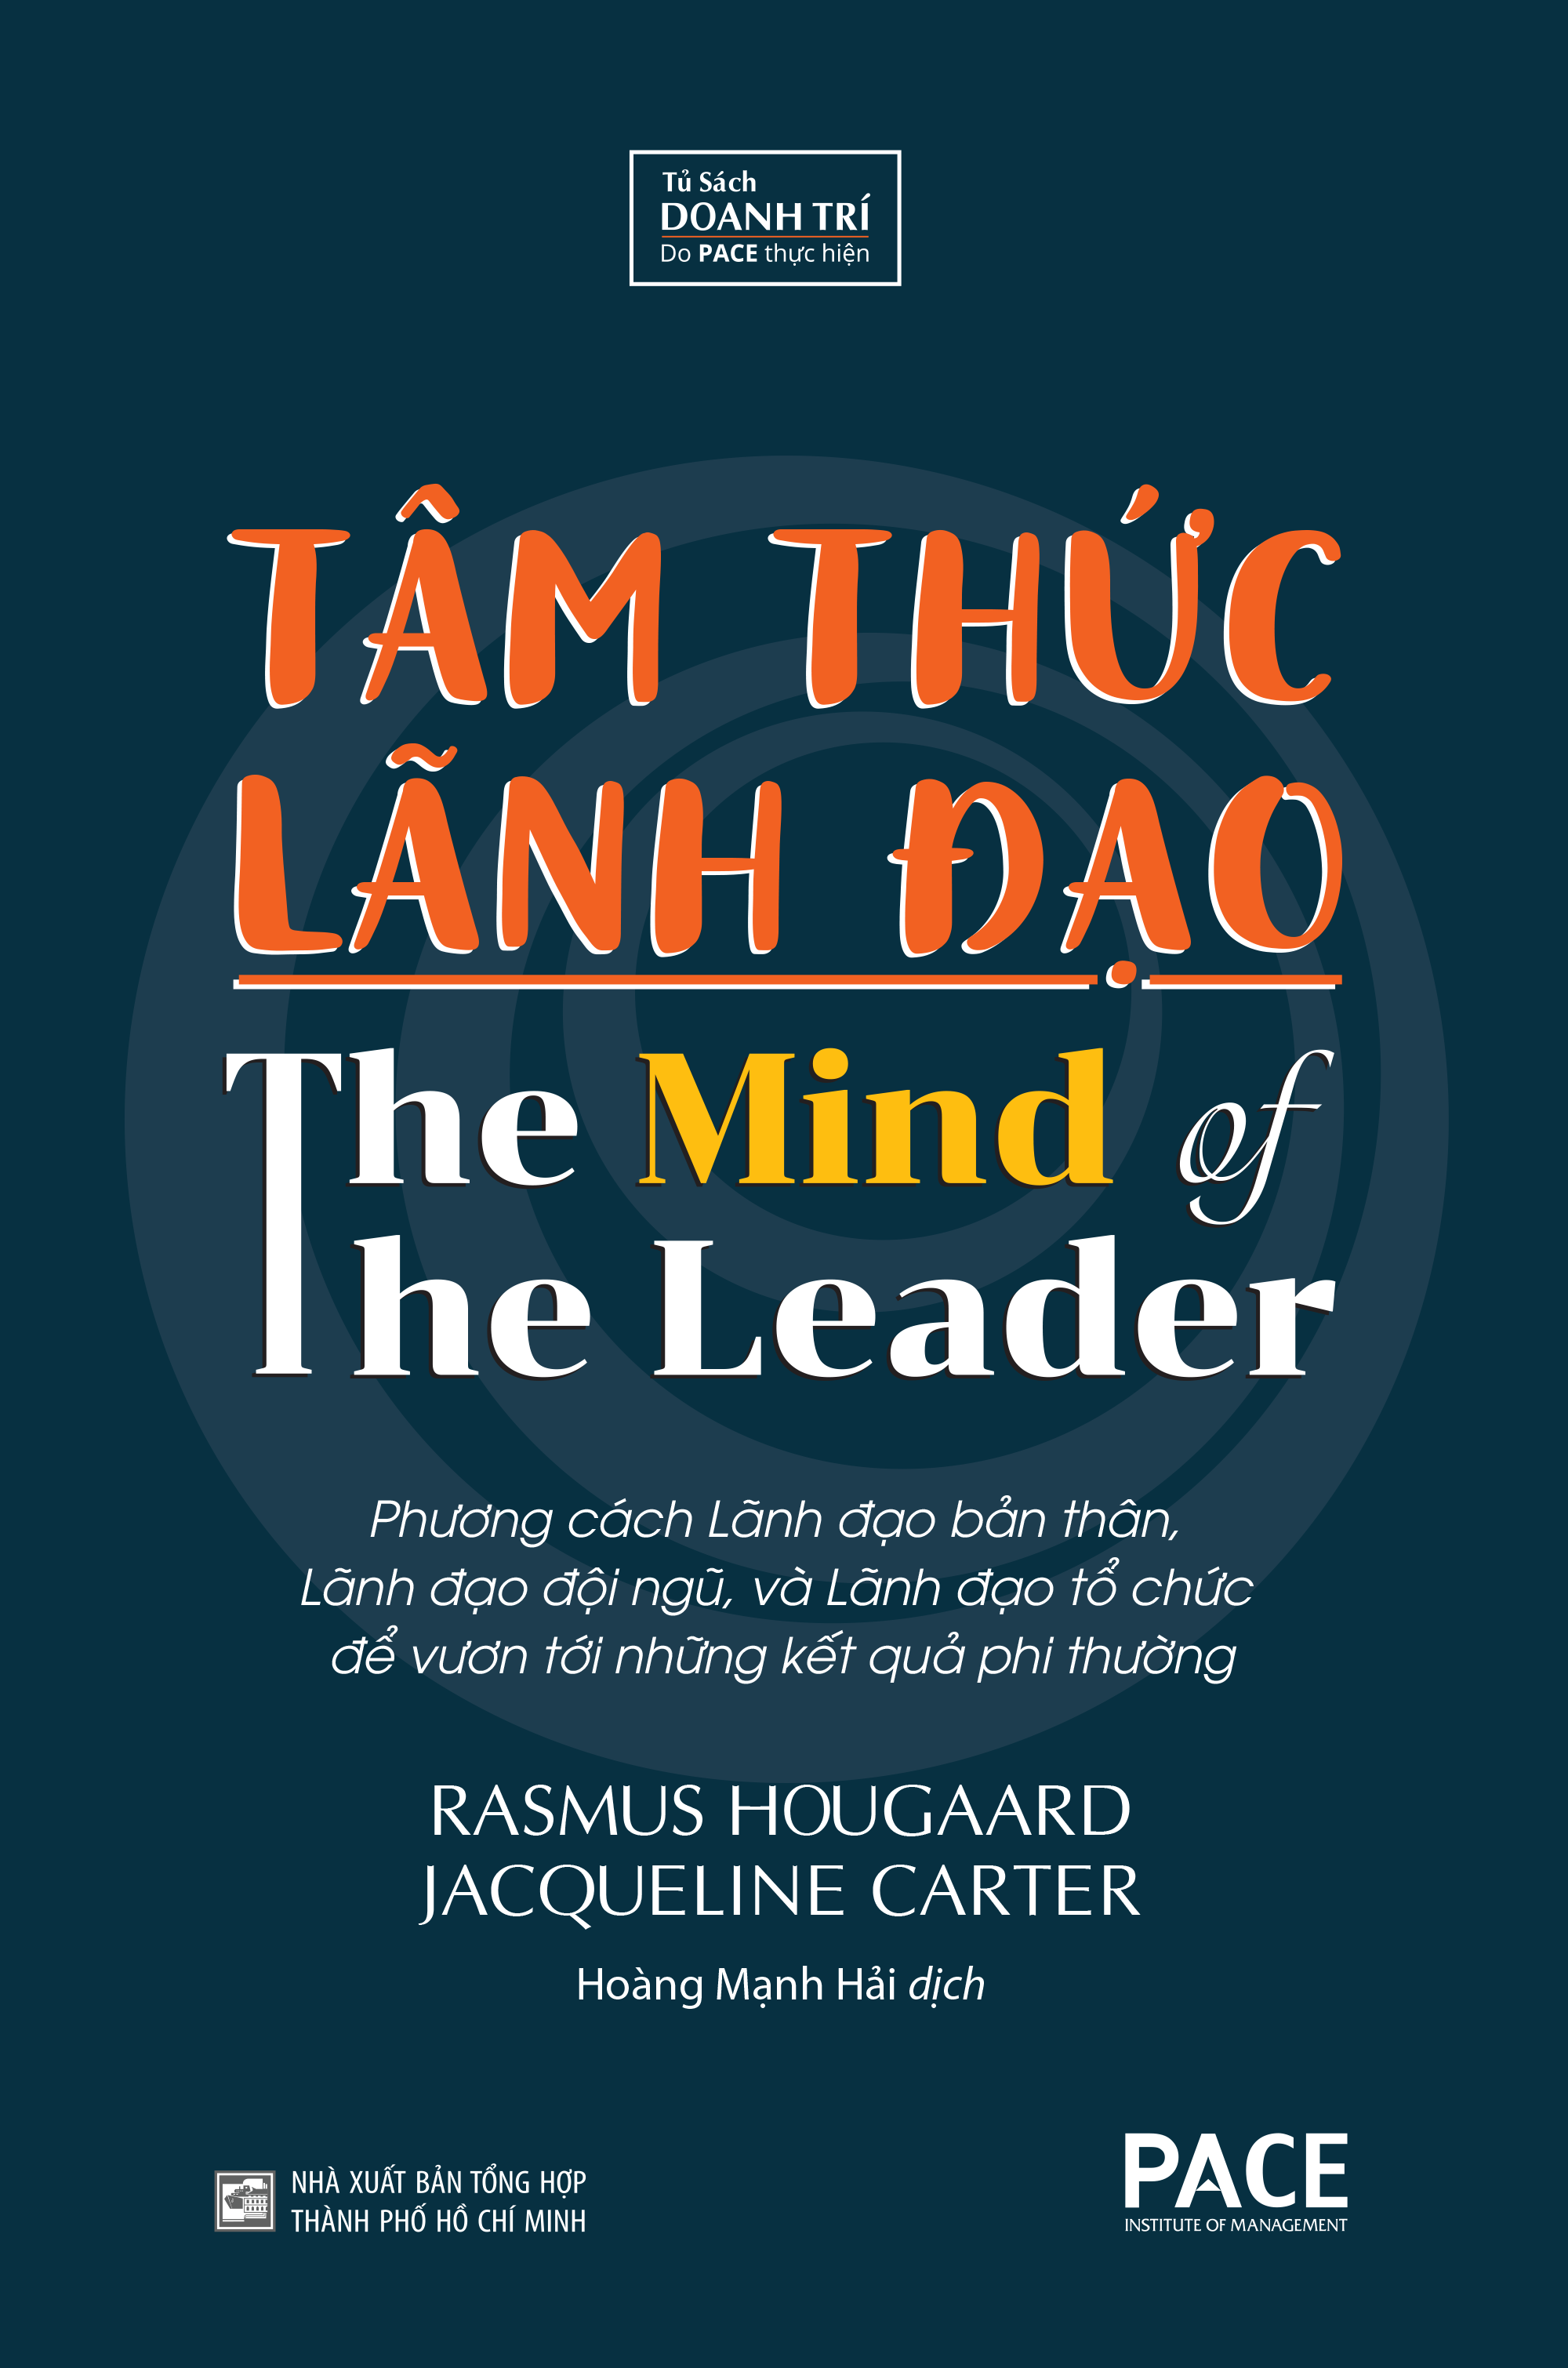 TÂM THỨC LÃNH ĐẠO (The Mind of The Leader) - Rasmus Hougaard, Jacqueline Carter - Hoàng Mạnh Hải dịch - (bìa cứng)